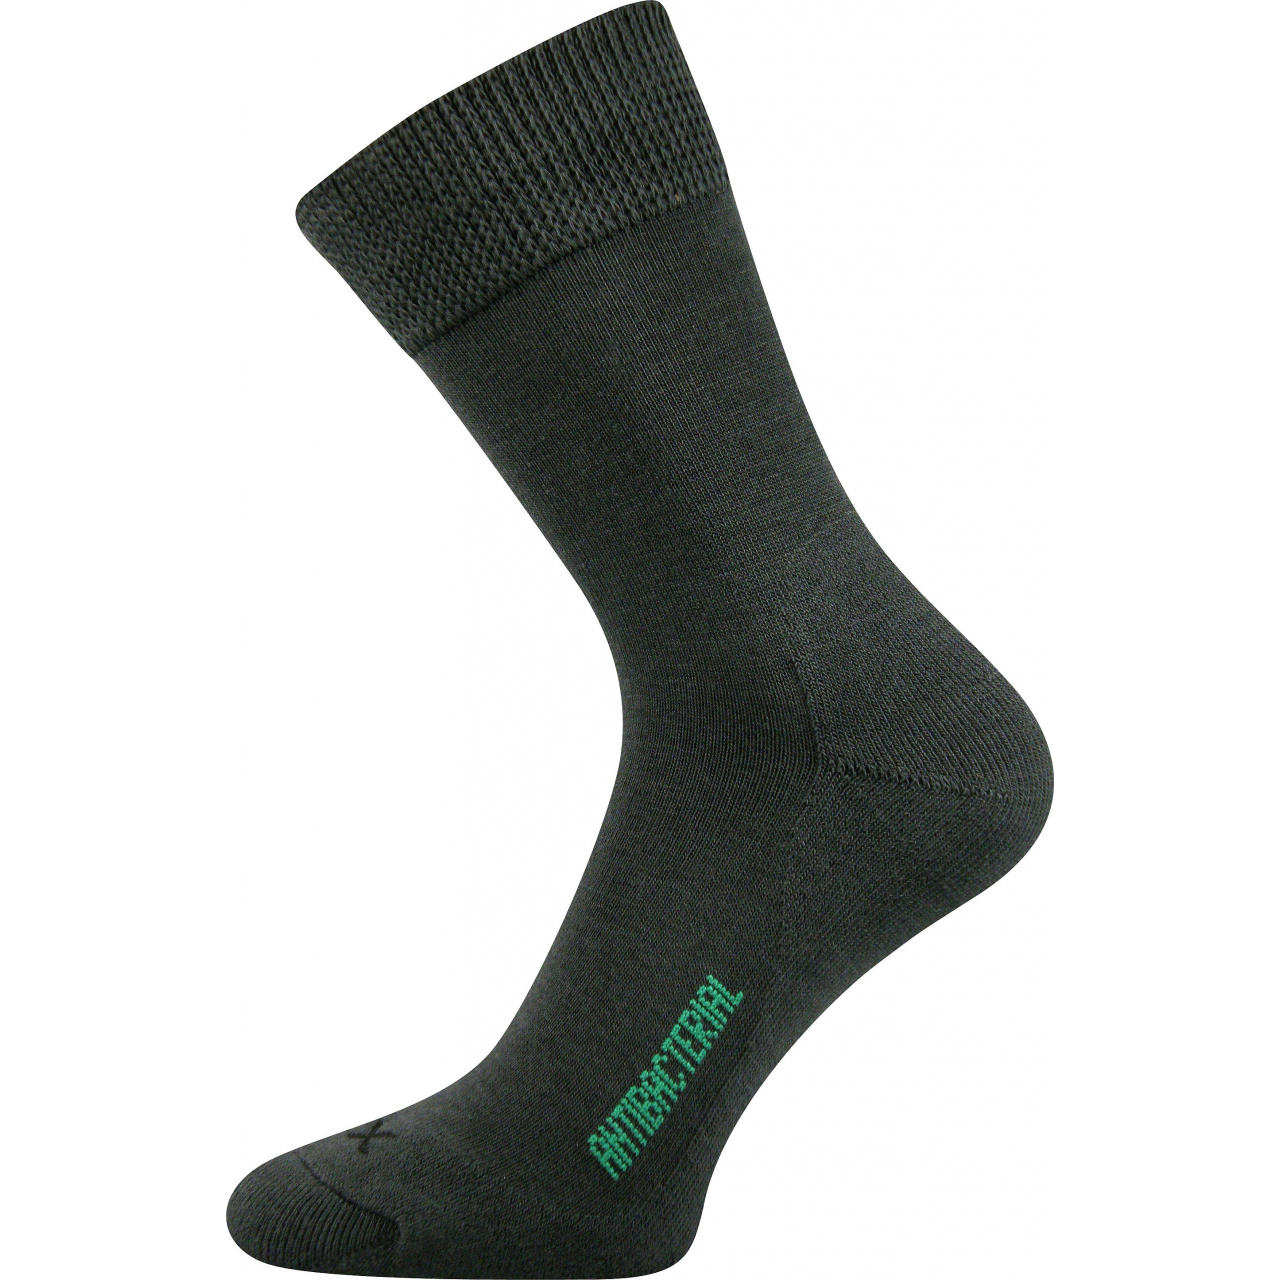 Ponožky zdravotní Voxx Zeus - tmavě šedé, 43-46